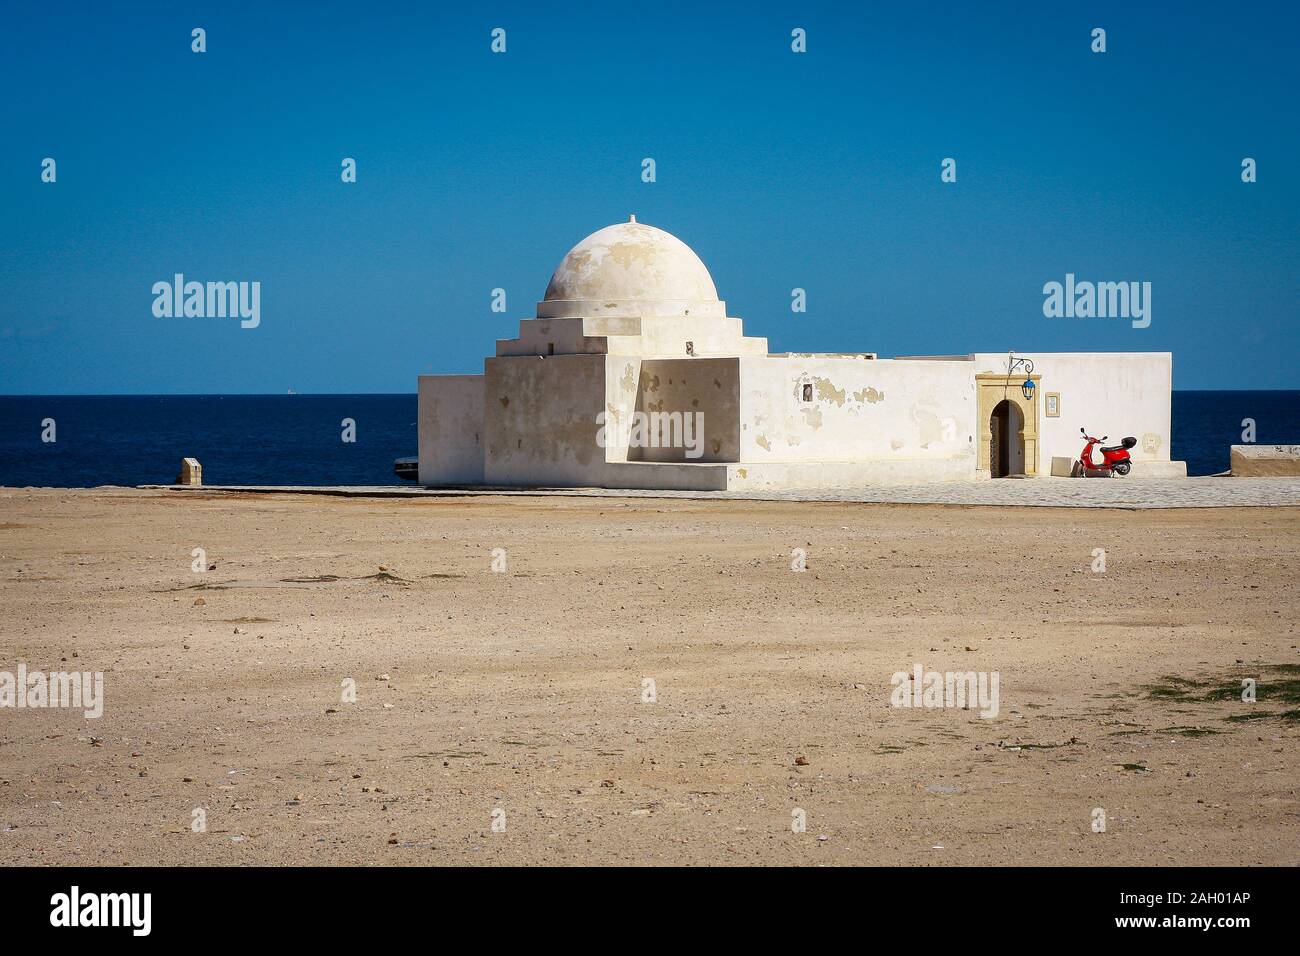 Sidi Mansour è un santuario sufi con una cupola bianca, situato vicino all'oceano su una scogliera, a Monastir, Tunisia Foto Stock